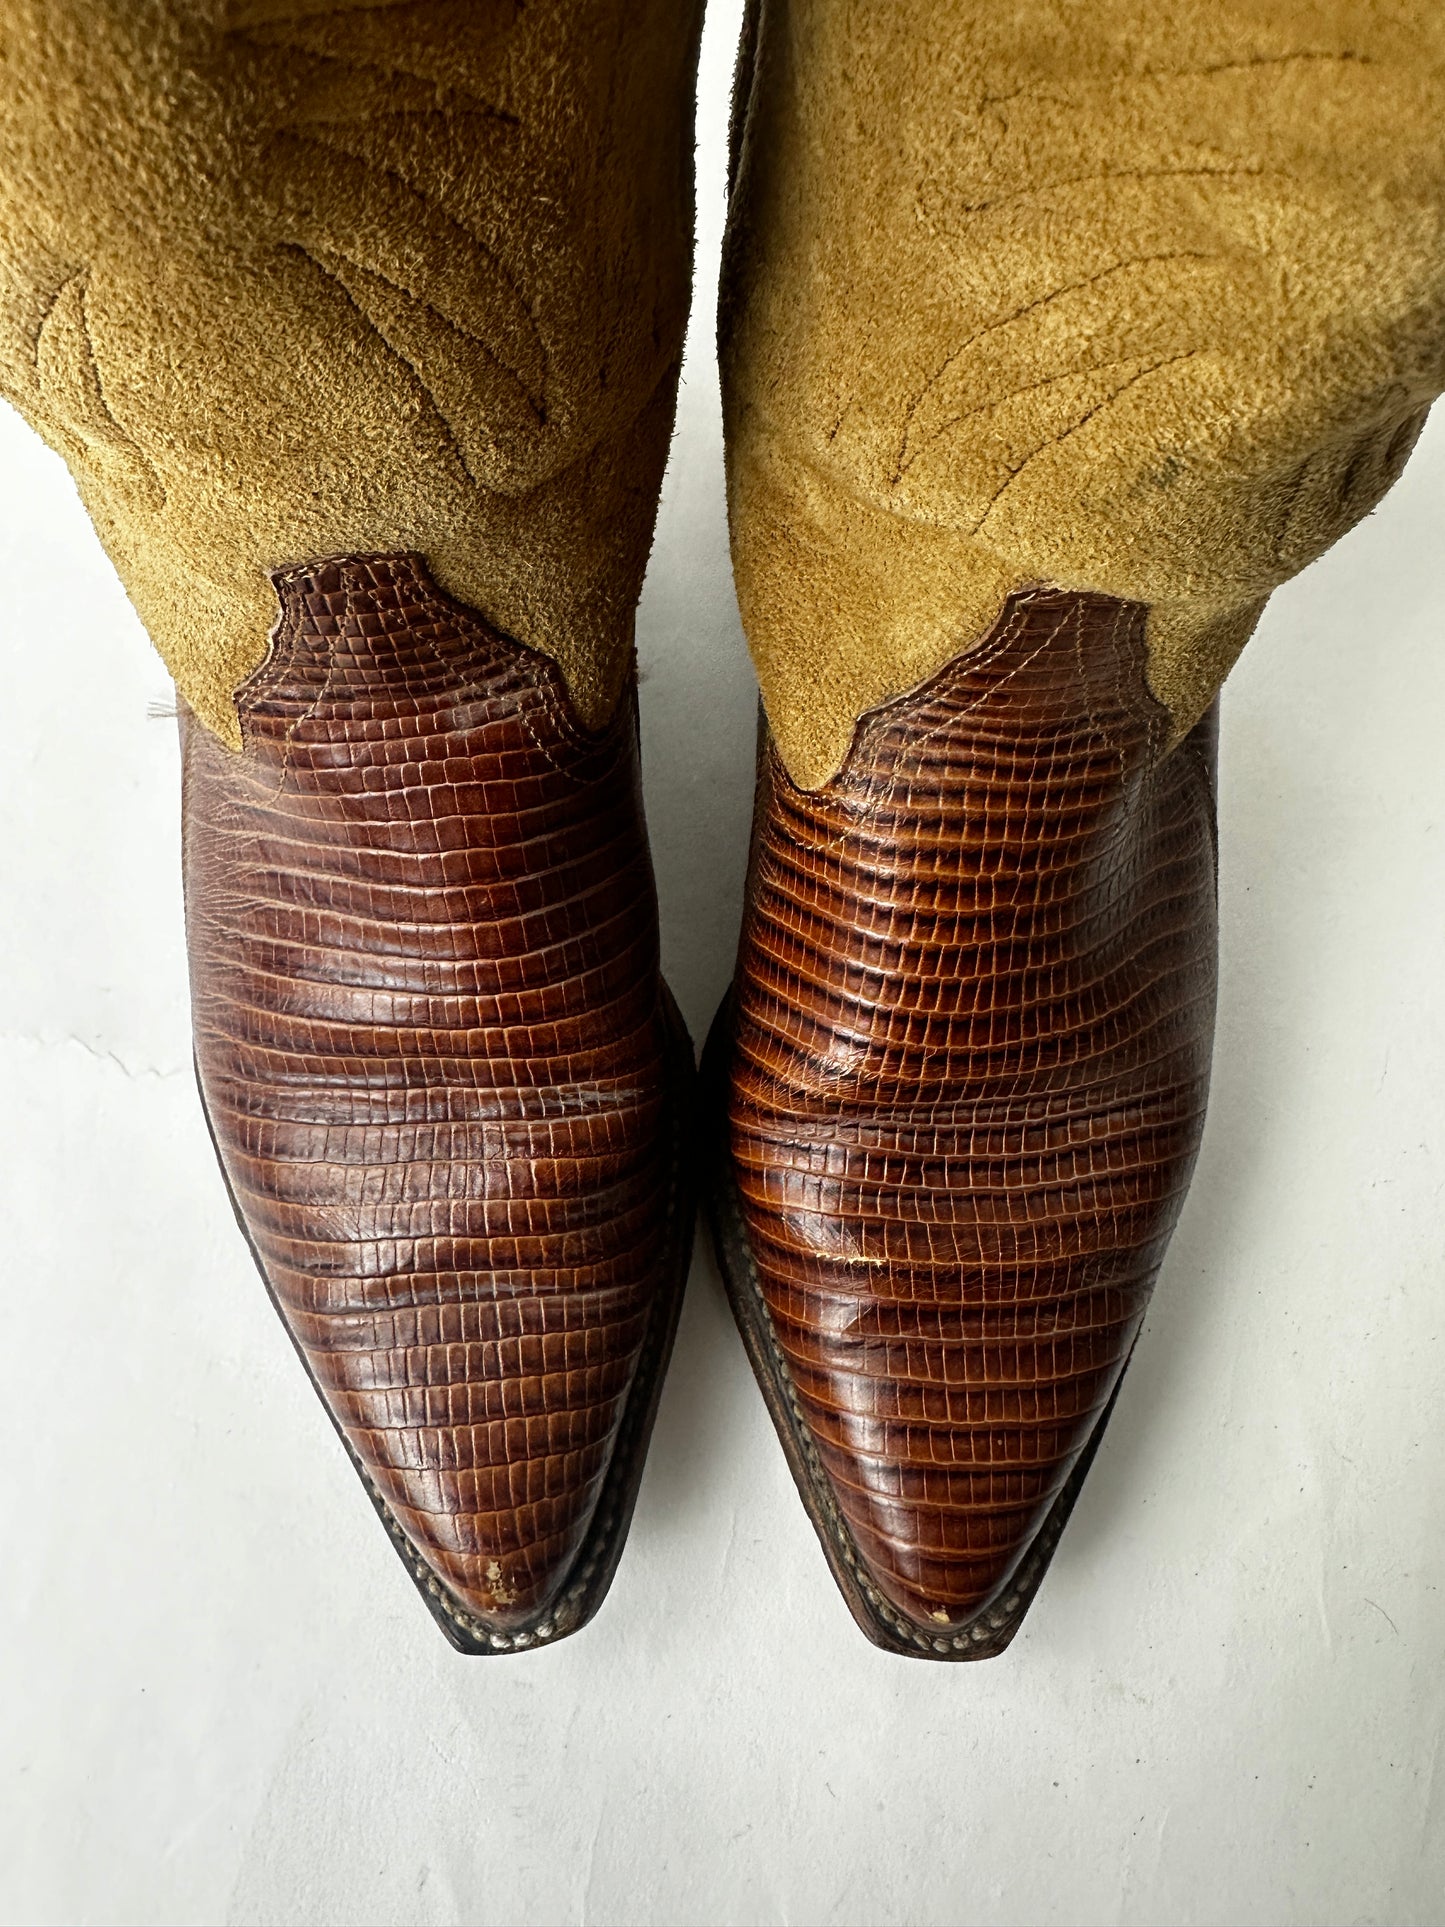 Vintage Sancho Cowboy Boots Womens EU36 US5.5 Brown Leather Suede Spain